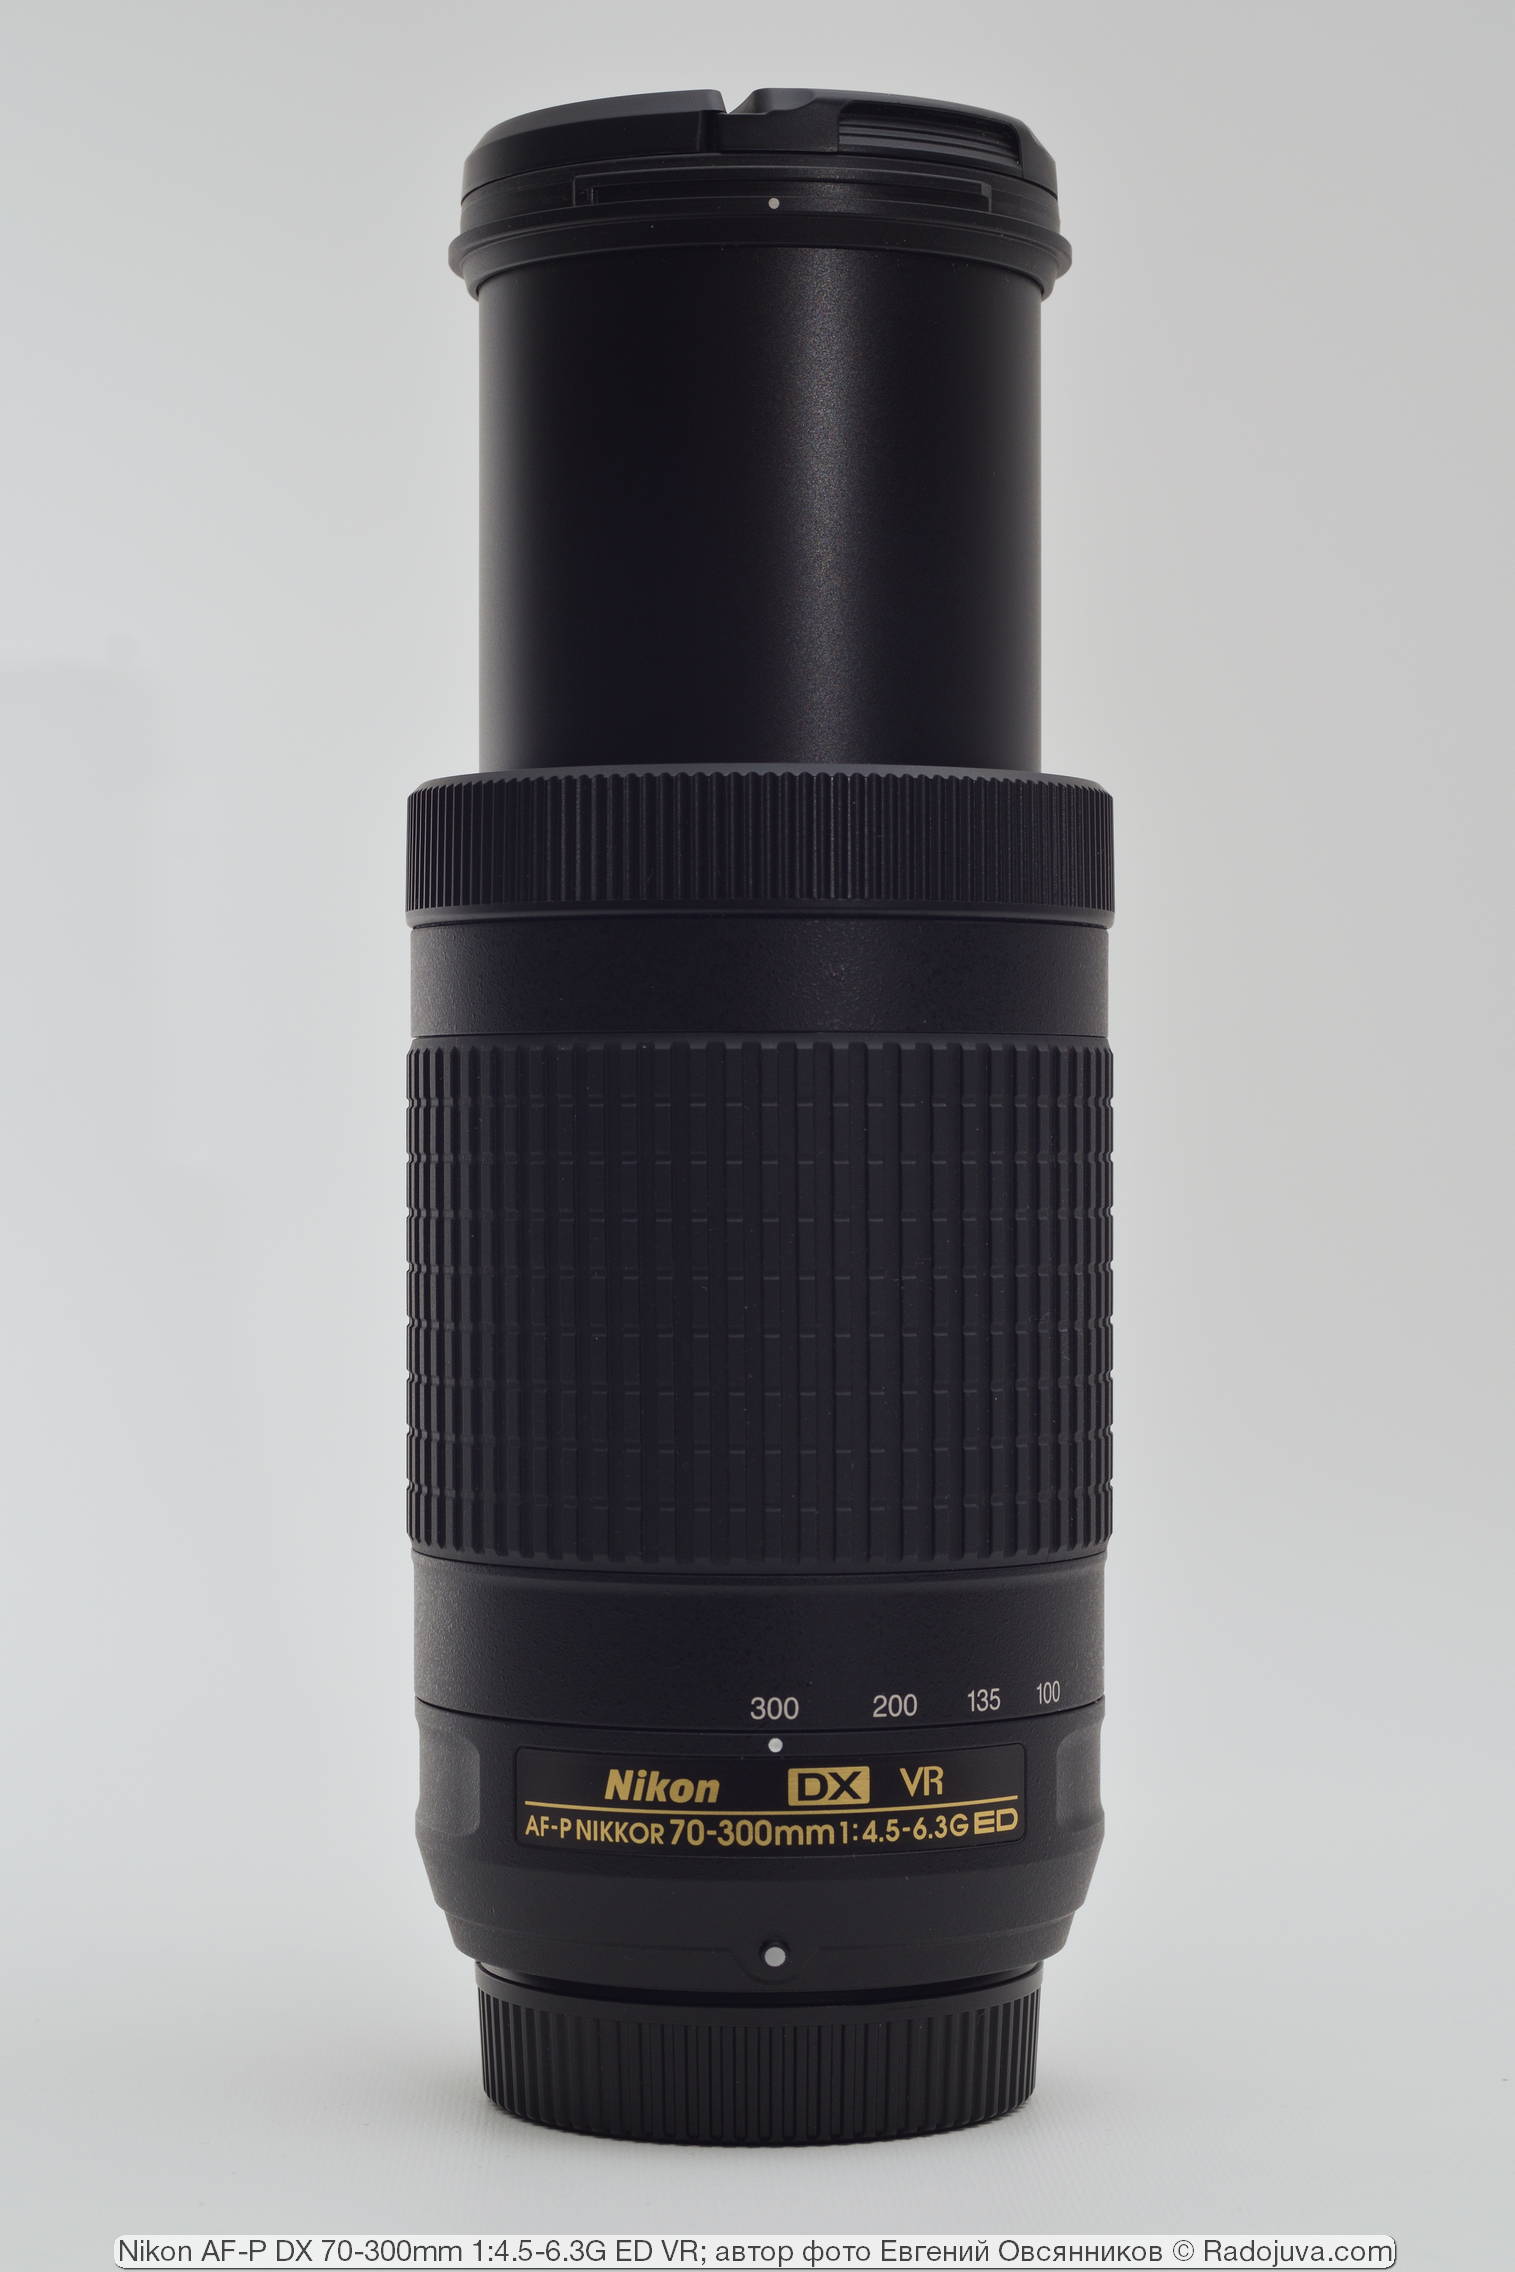 Nikon AF-P DX Nikkor 70-300mm 1: 4.5-6.3G ED VR. Review from the 